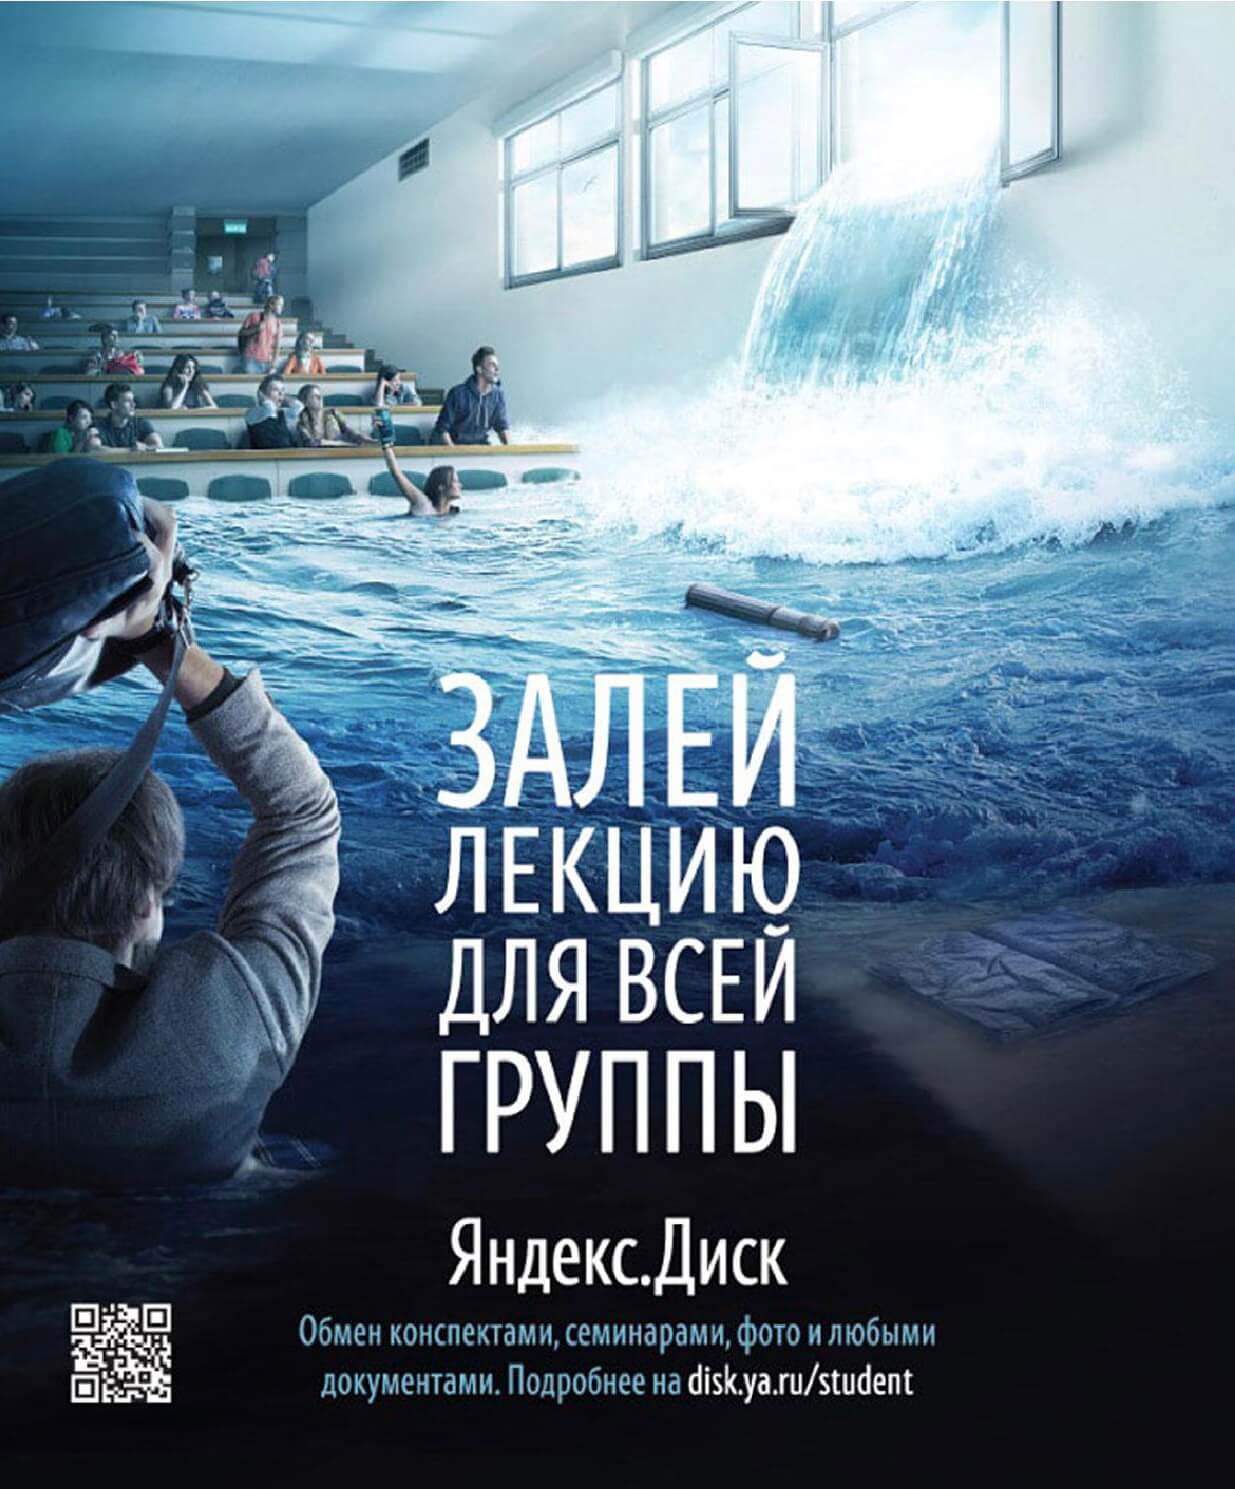 Реклама «Яндекса»